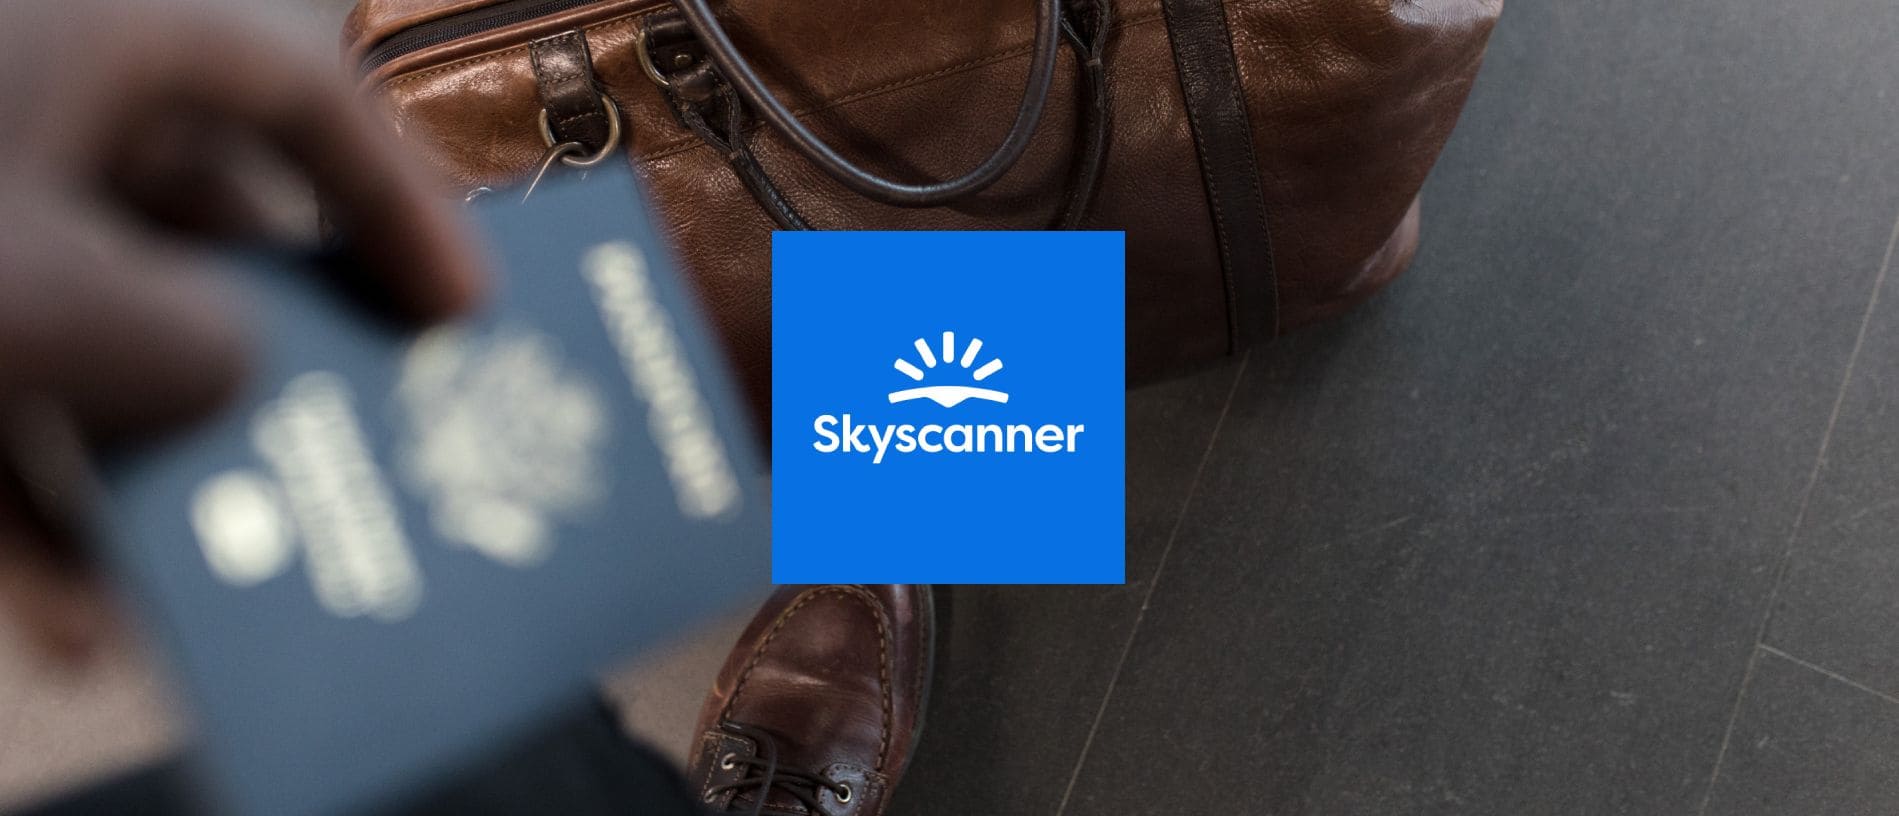 البحث عن أرخص عروض الطيران مع Skyscanner